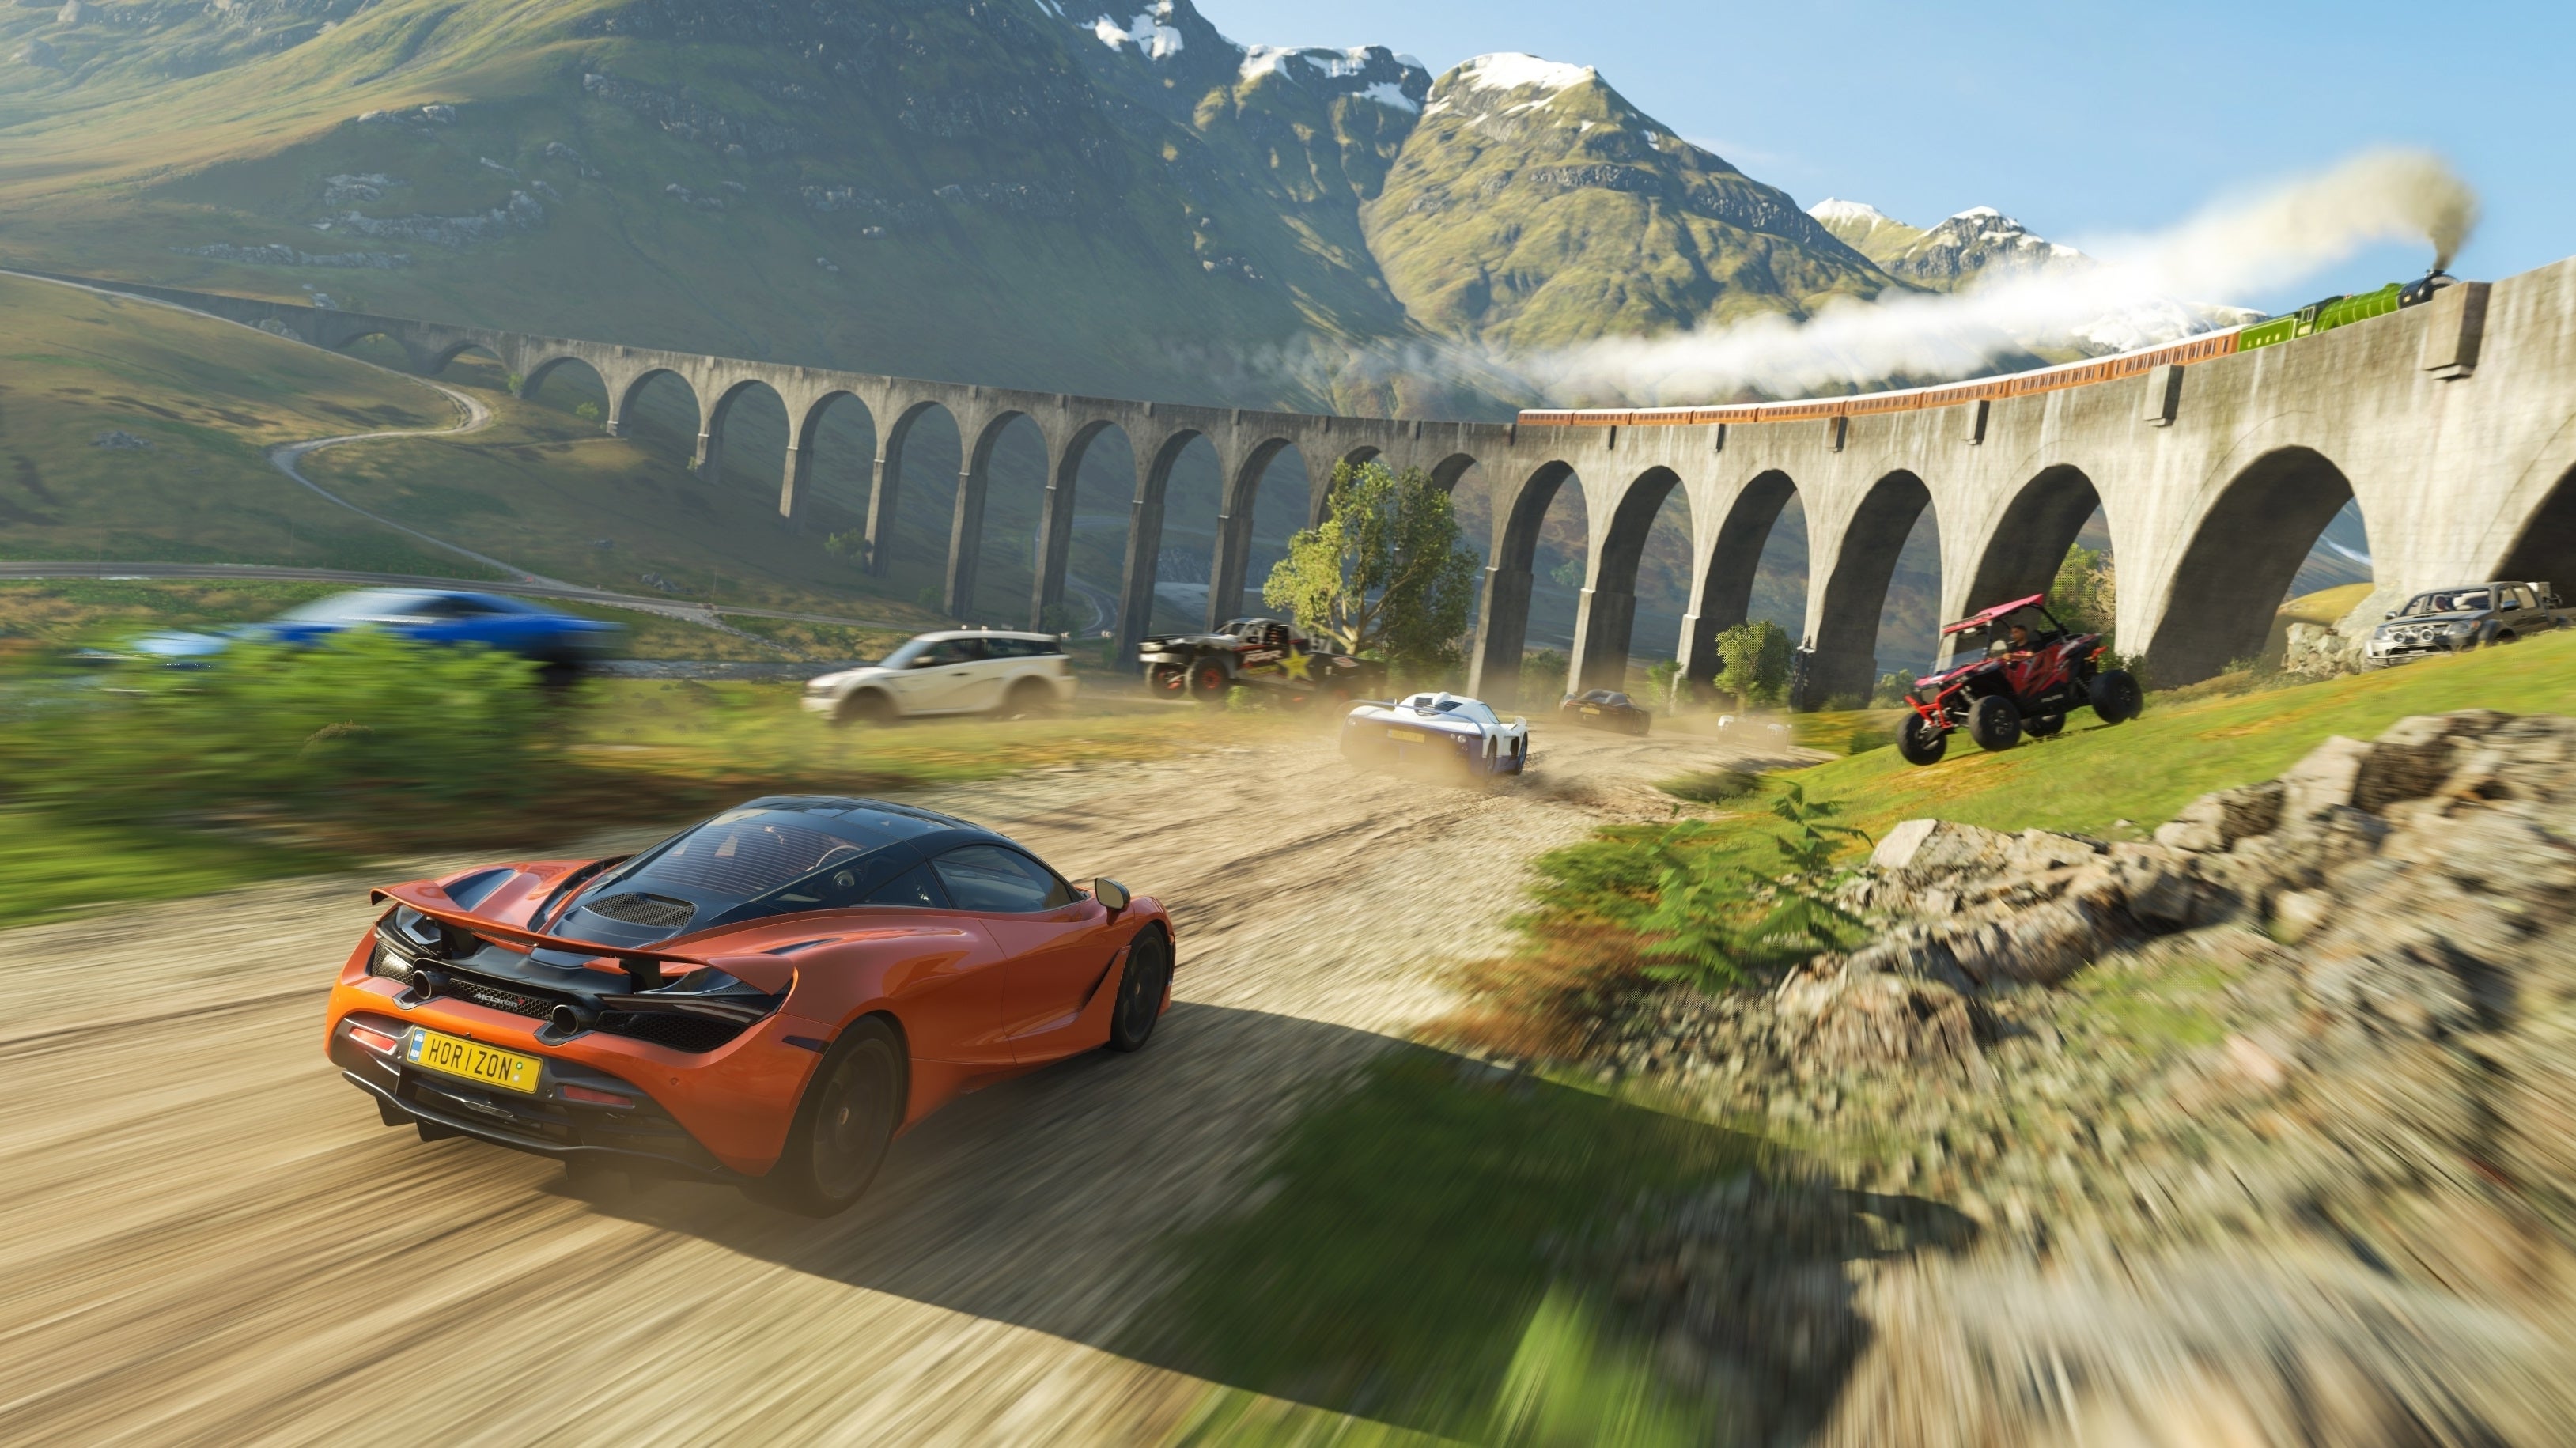 Immagine di Forza Horizon 4 è stato giocato da 24 milioni di utenti